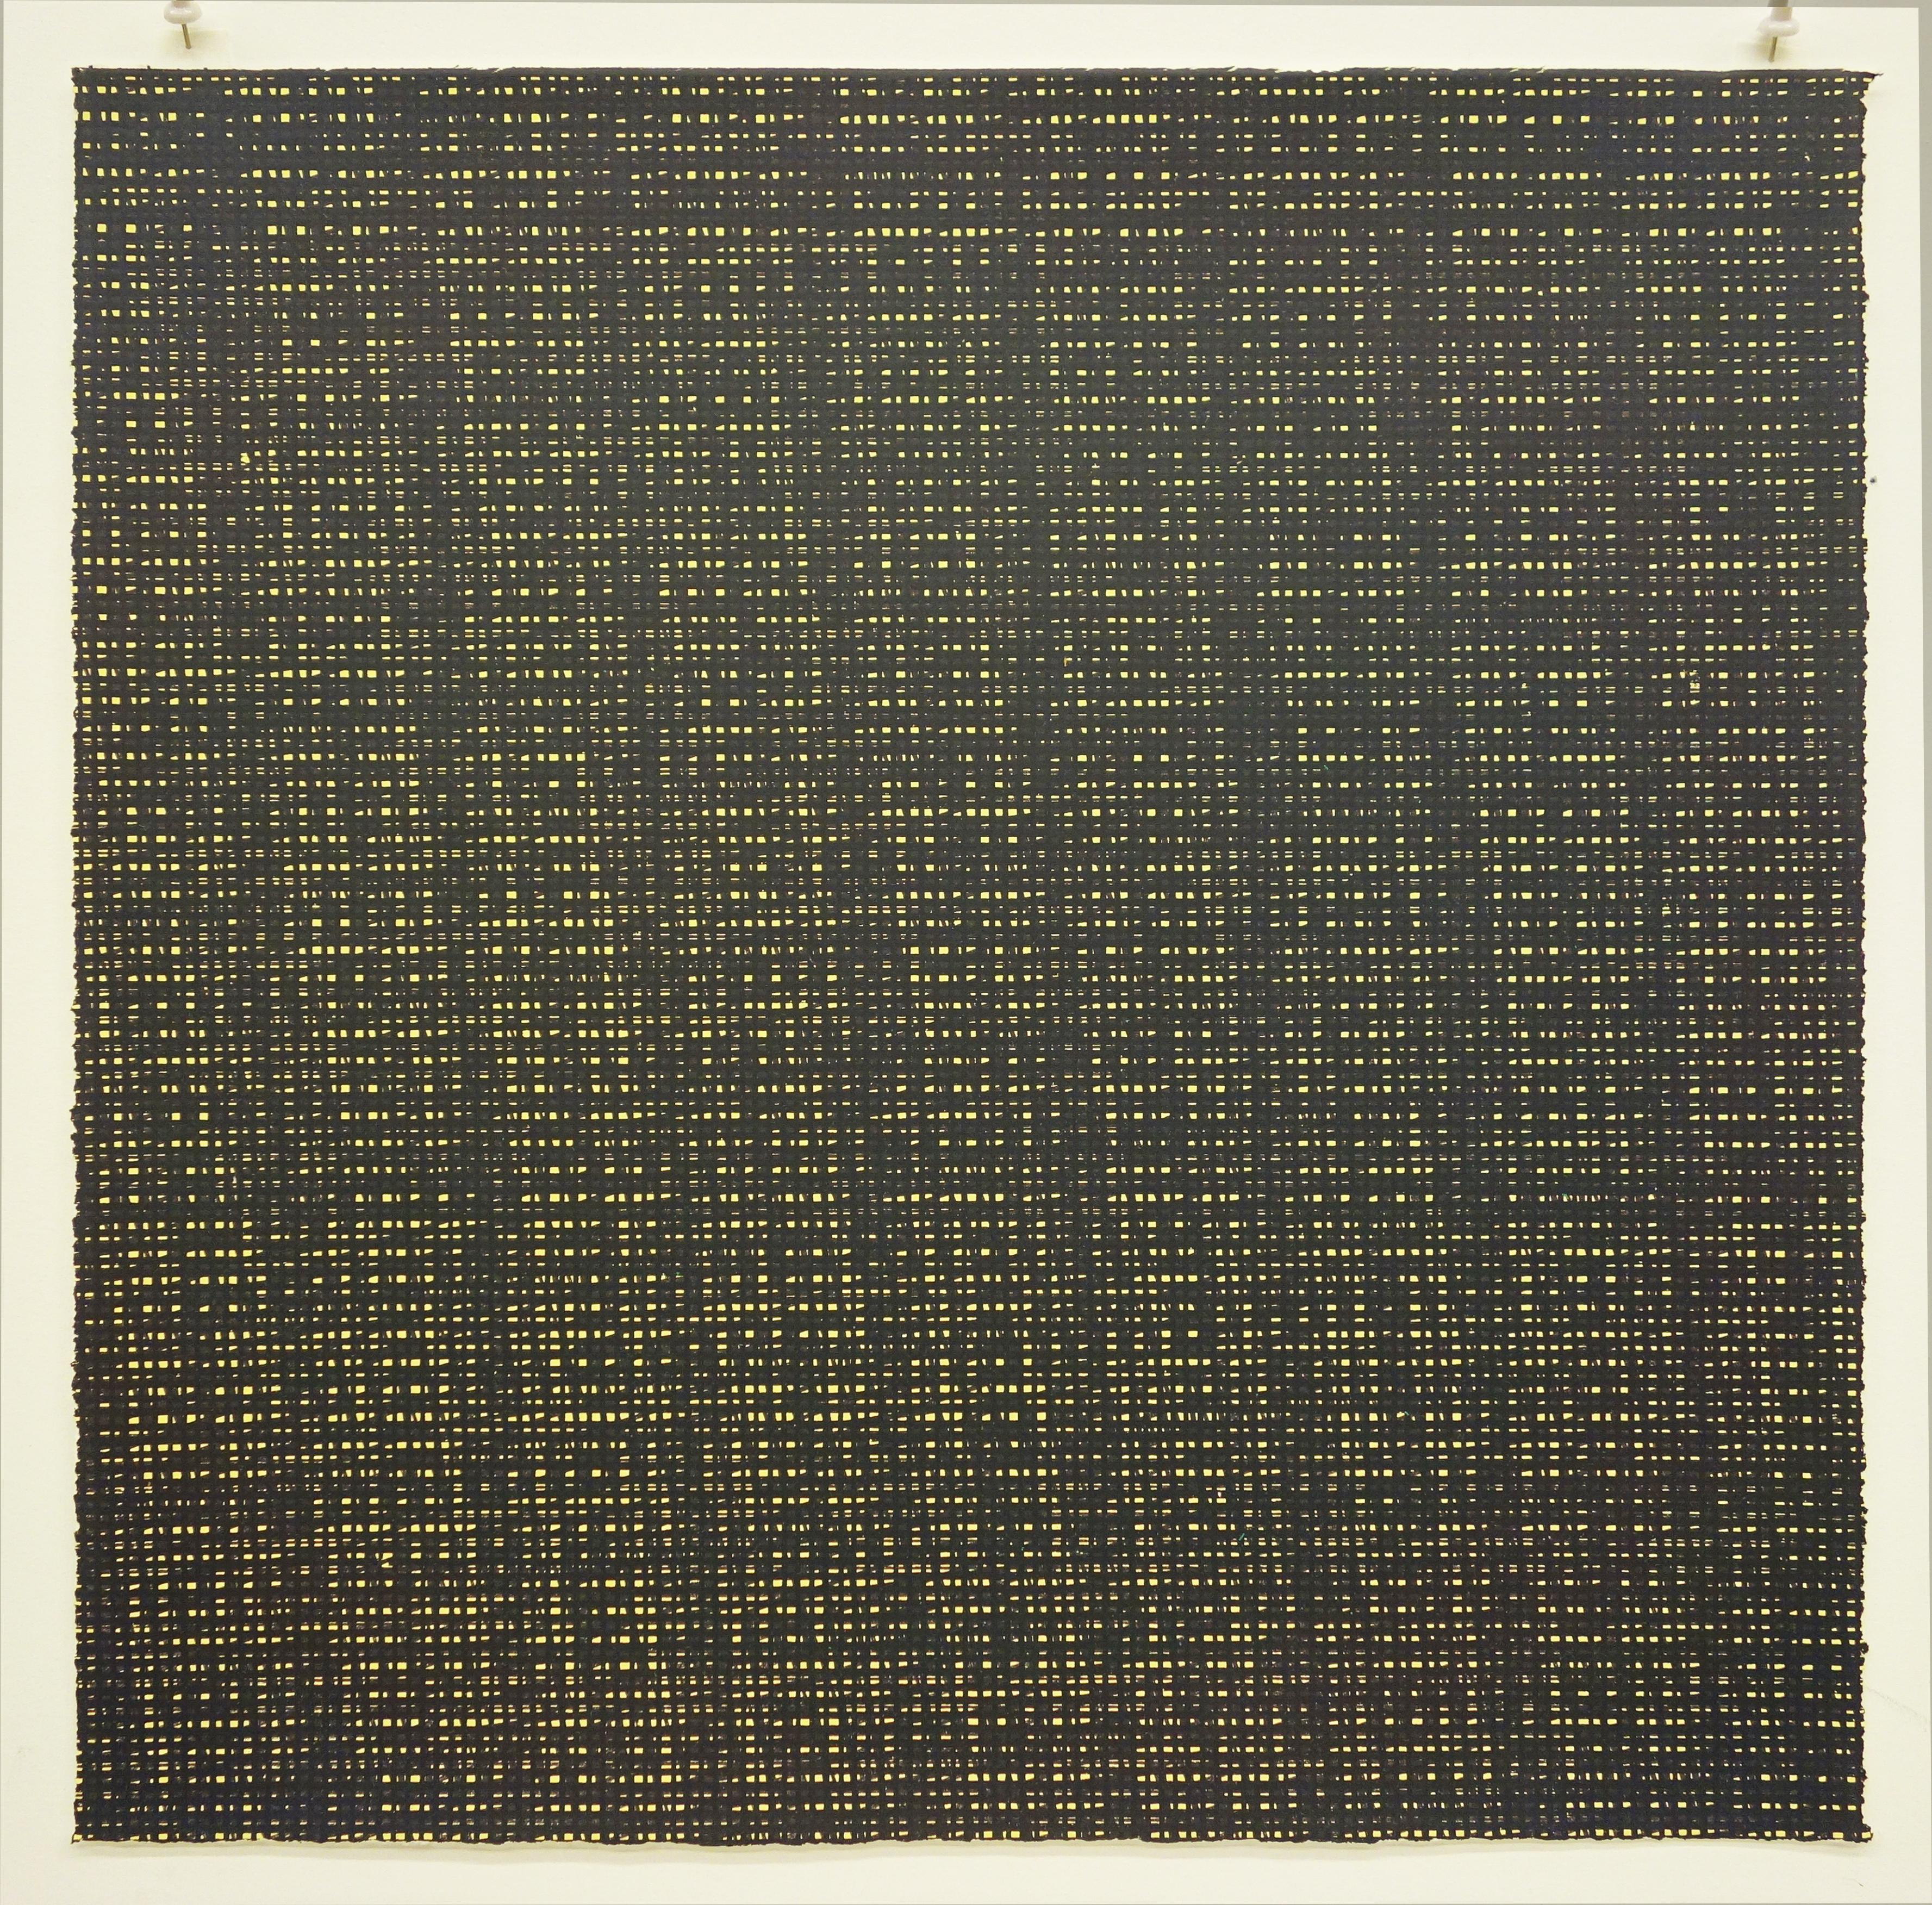 Rob de Oude, Untitled-Wassaic 6, 2016, silkscreen, 18 x 18, Minimalist 4